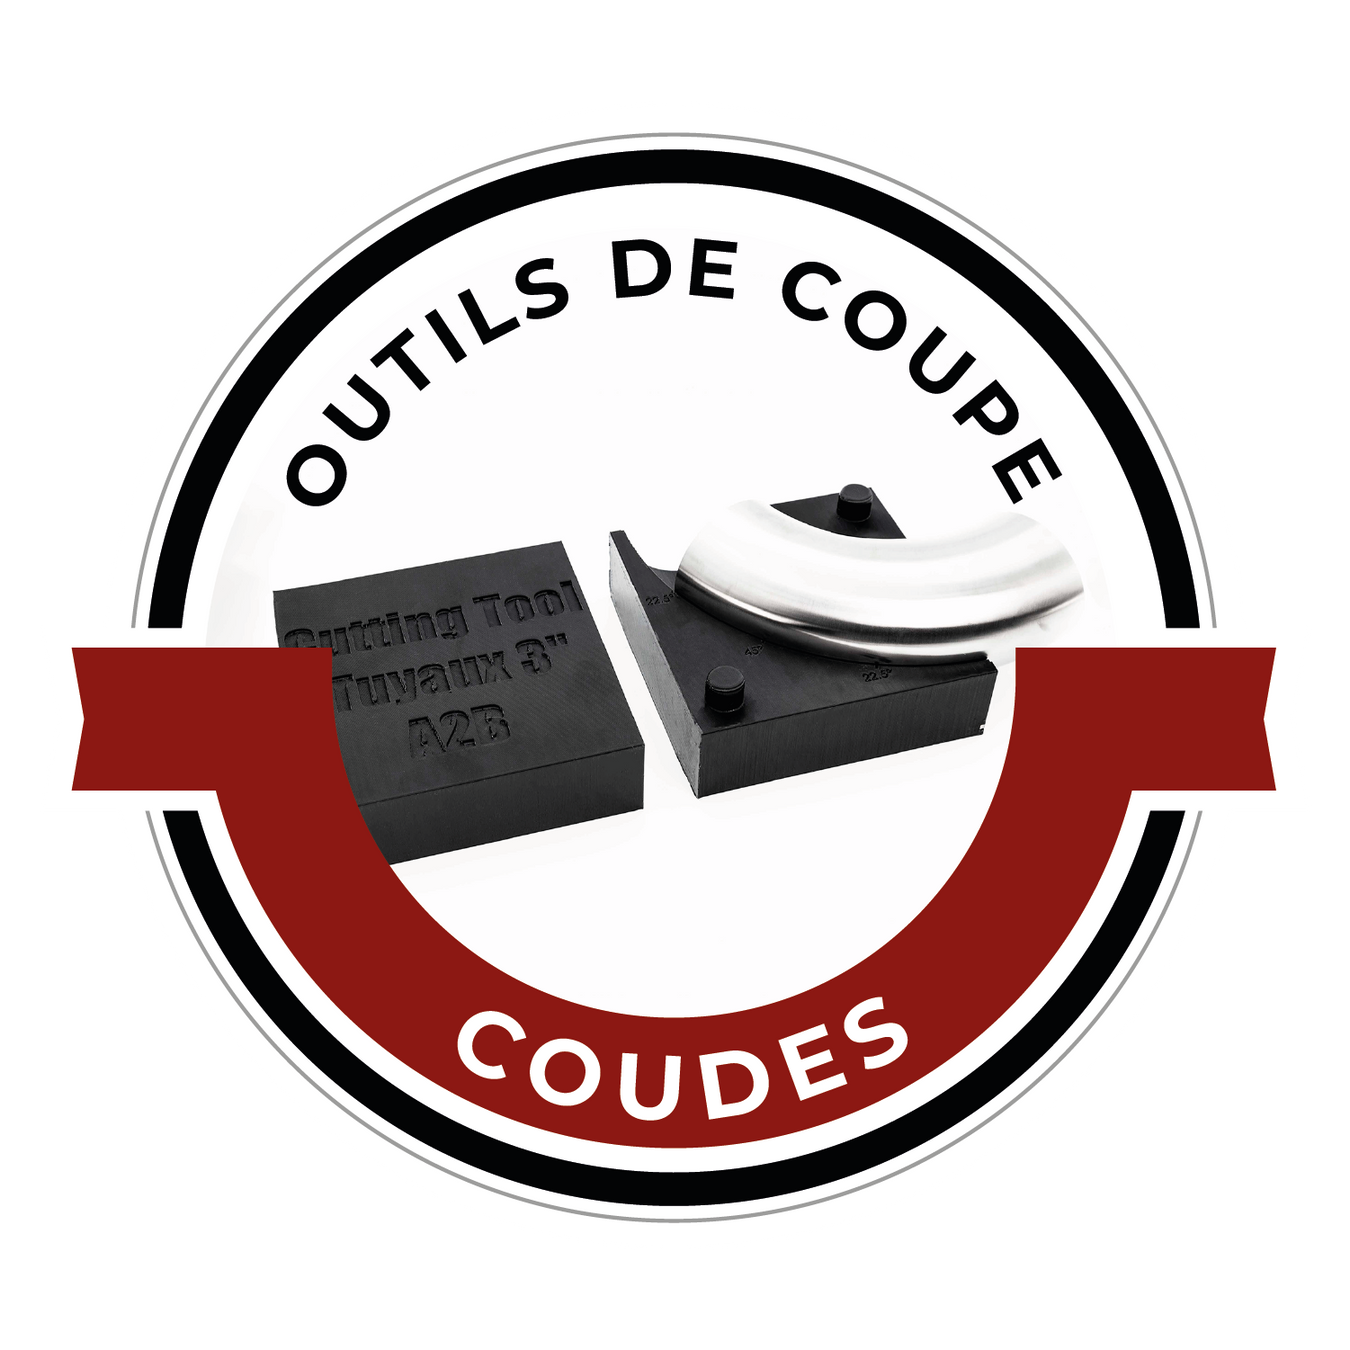 Outils de coupe - Coudes